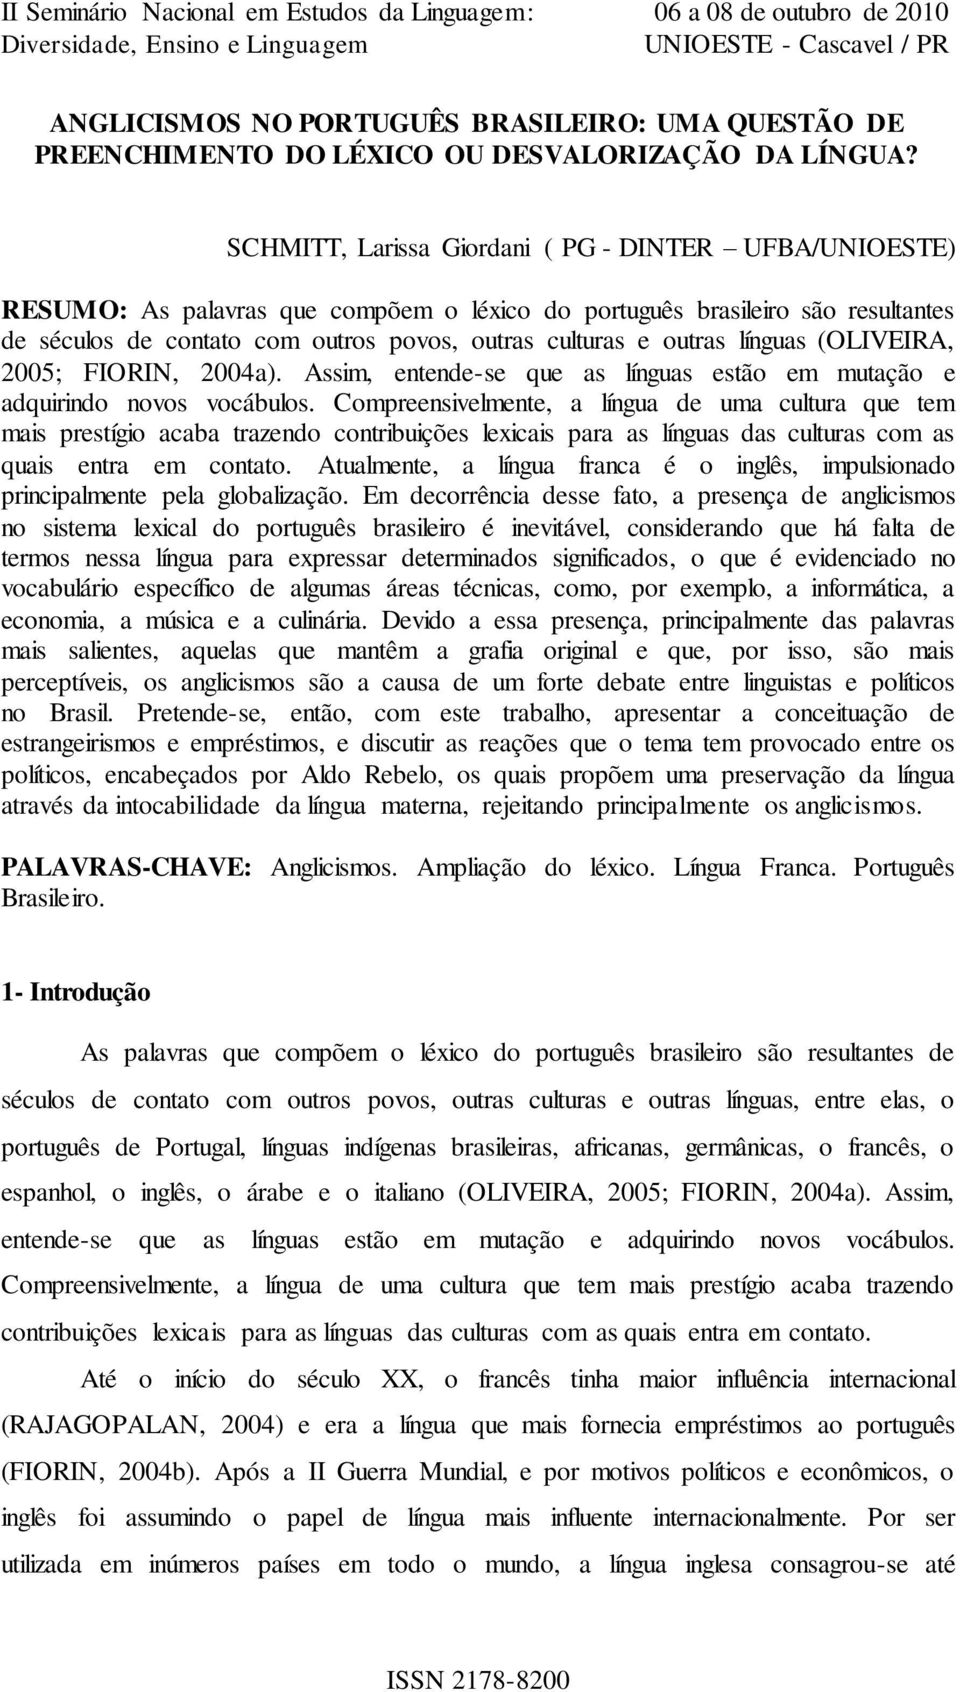 outras línguas (OLIVEIRA, 2005; FIORIN, 2004a). Assim, entende-se que as línguas estão em mutação e adquirindo novos vocábulos.